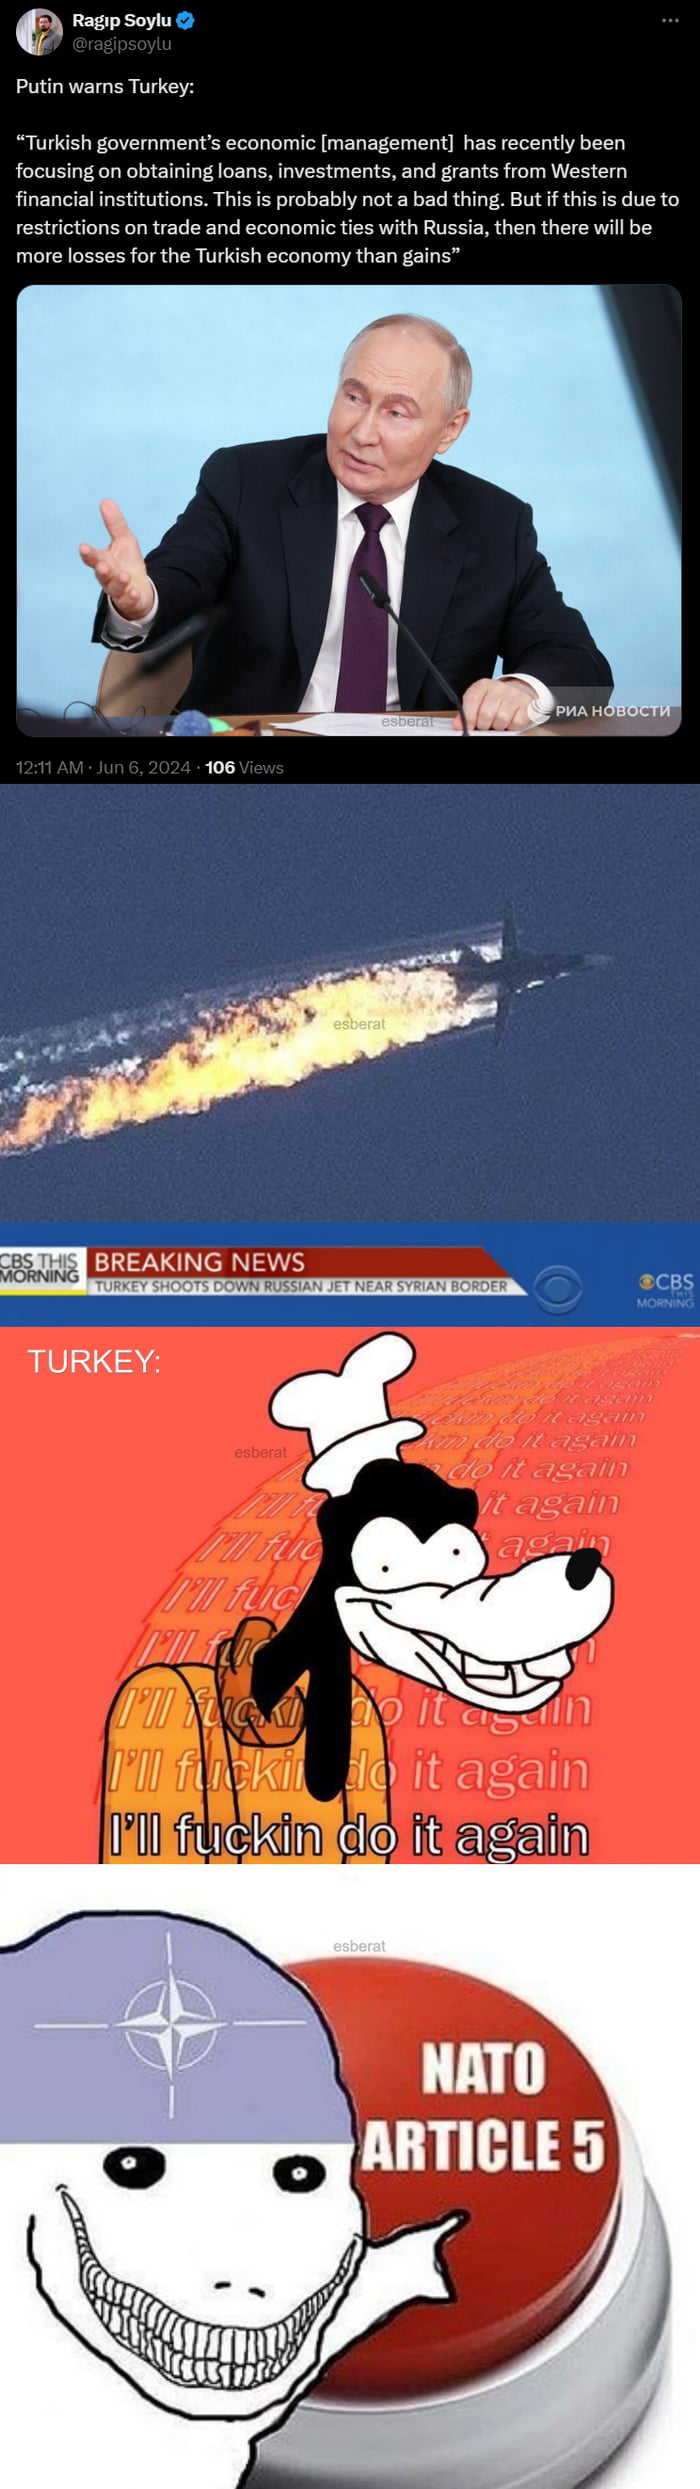 Russia warns Turkey! Also Turkey...